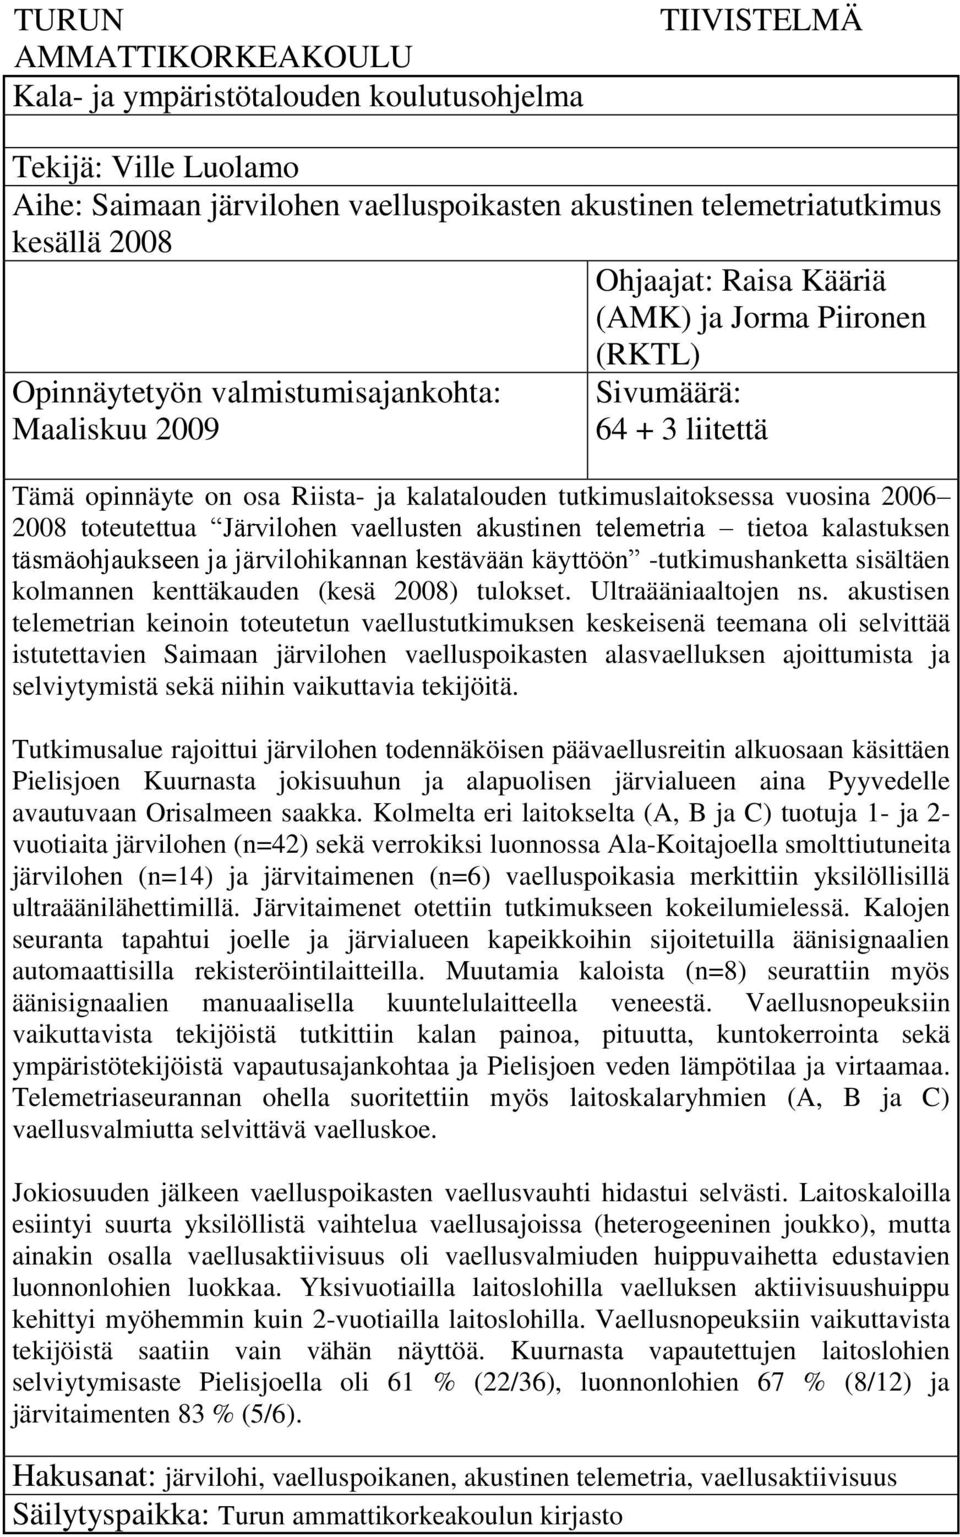 2006 2008 toteutettua Järvilohen vaellusten akustinen telemetria tietoa kalastuksen täsmäohjaukseen ja järvilohikannan kestävään käyttöön -tutkimushanketta sisältäen kolmannen kenttäkauden (kesä